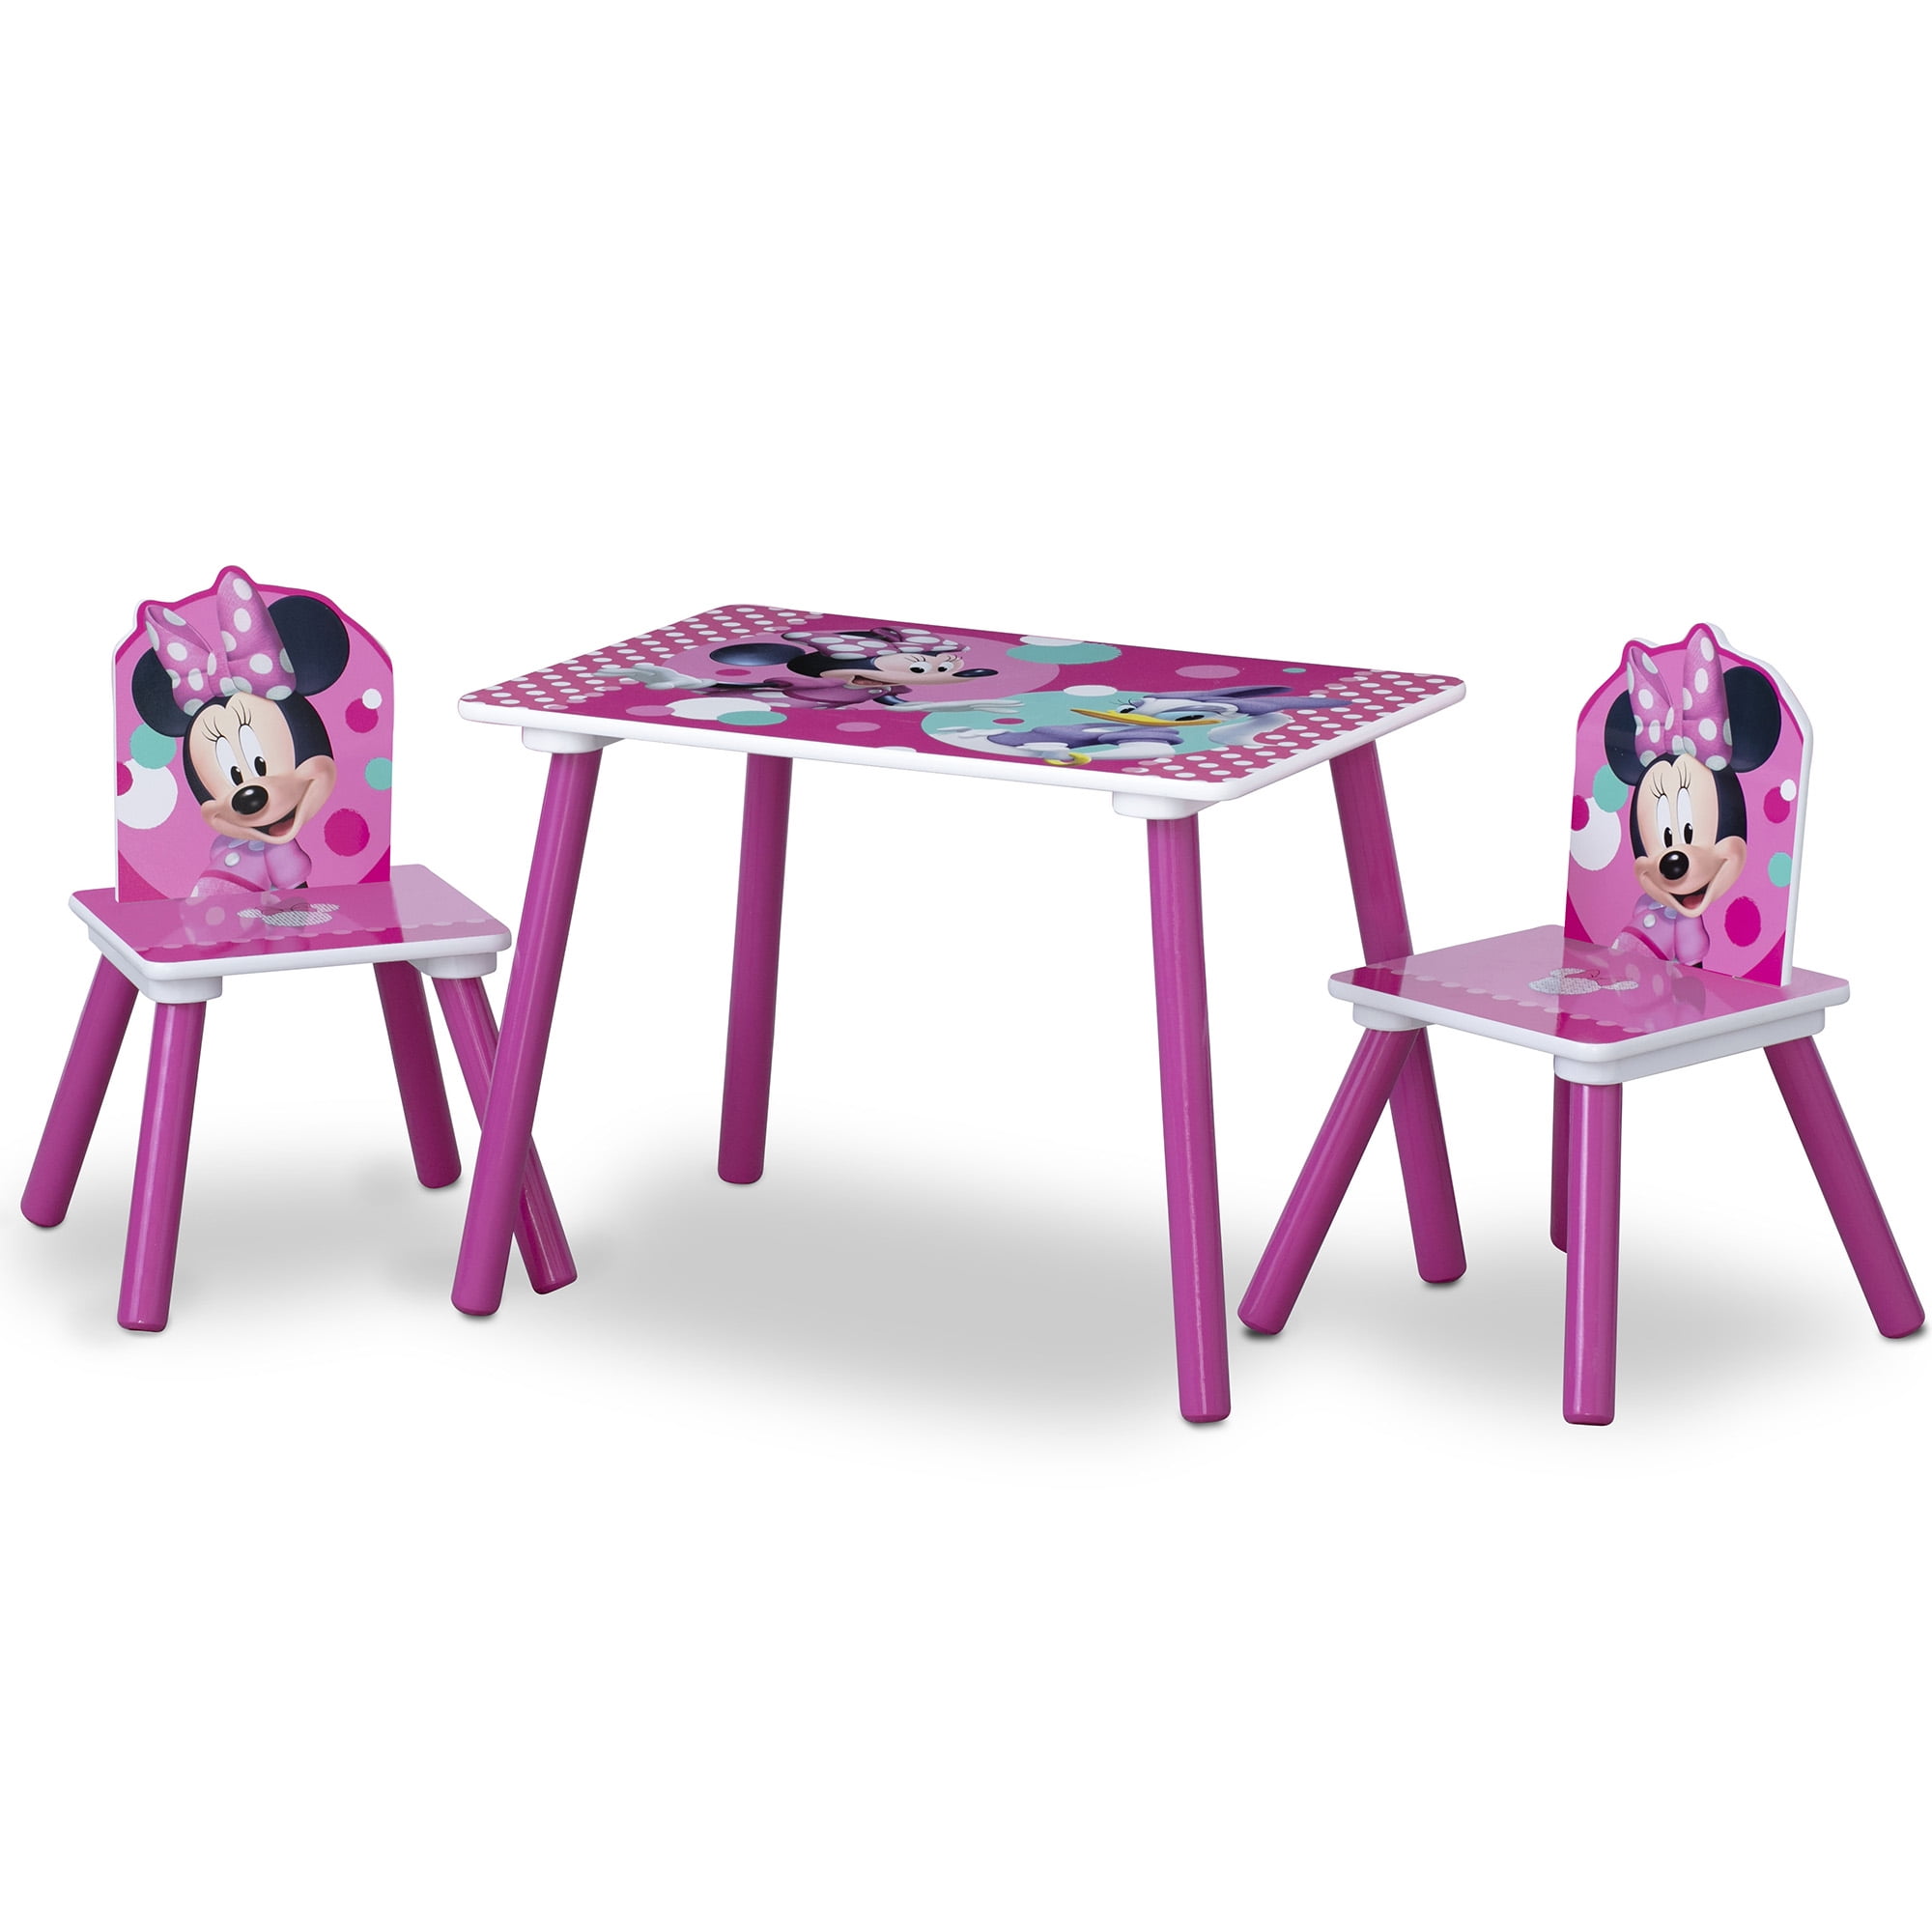 Kids Chair Desk Set Storage Table Child Play Furniture Toddler Disney Frozen Bin 